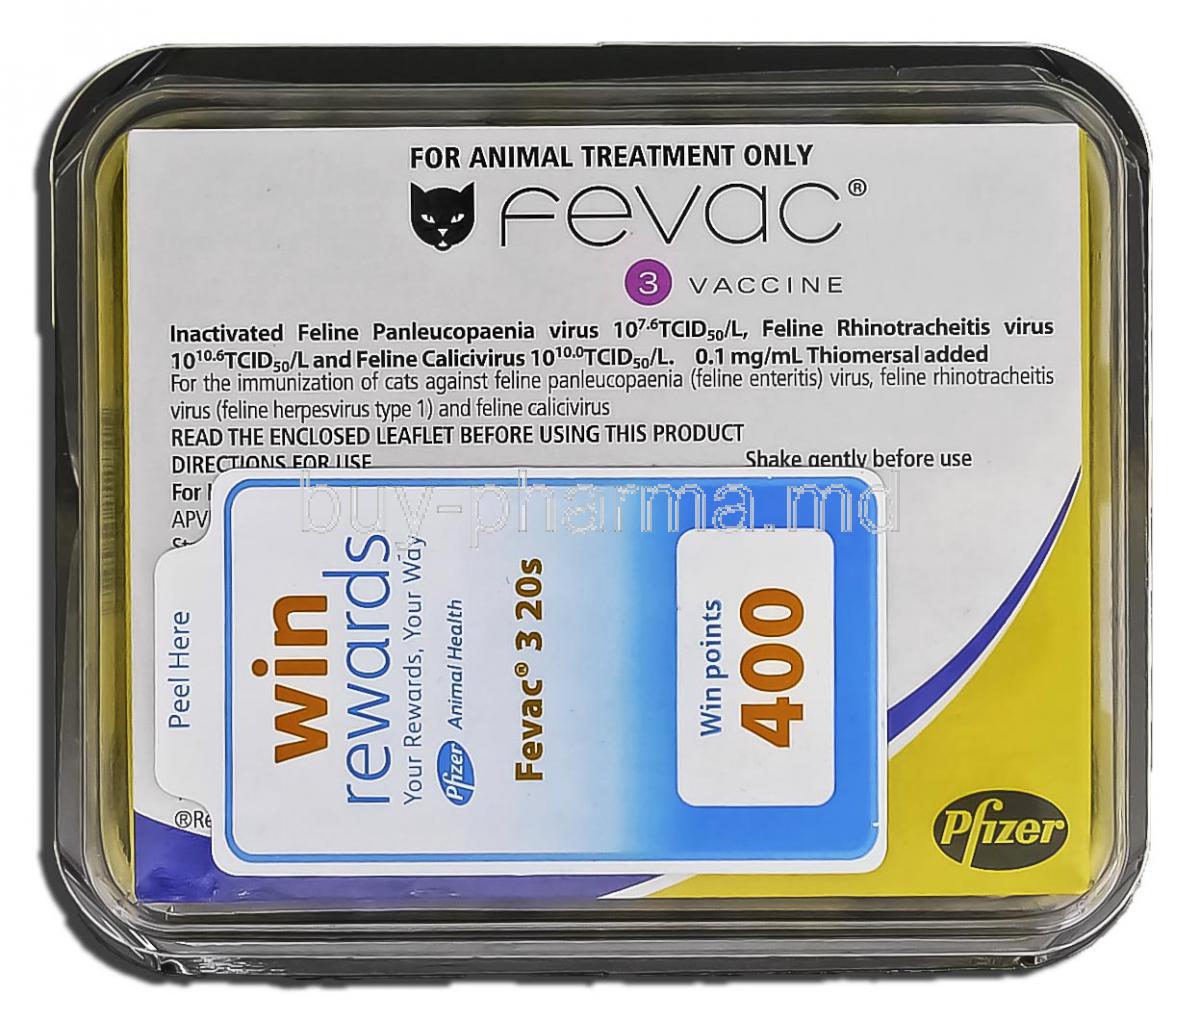 Fevac 3, Vaccine Injection, 20 vials, 1 ml